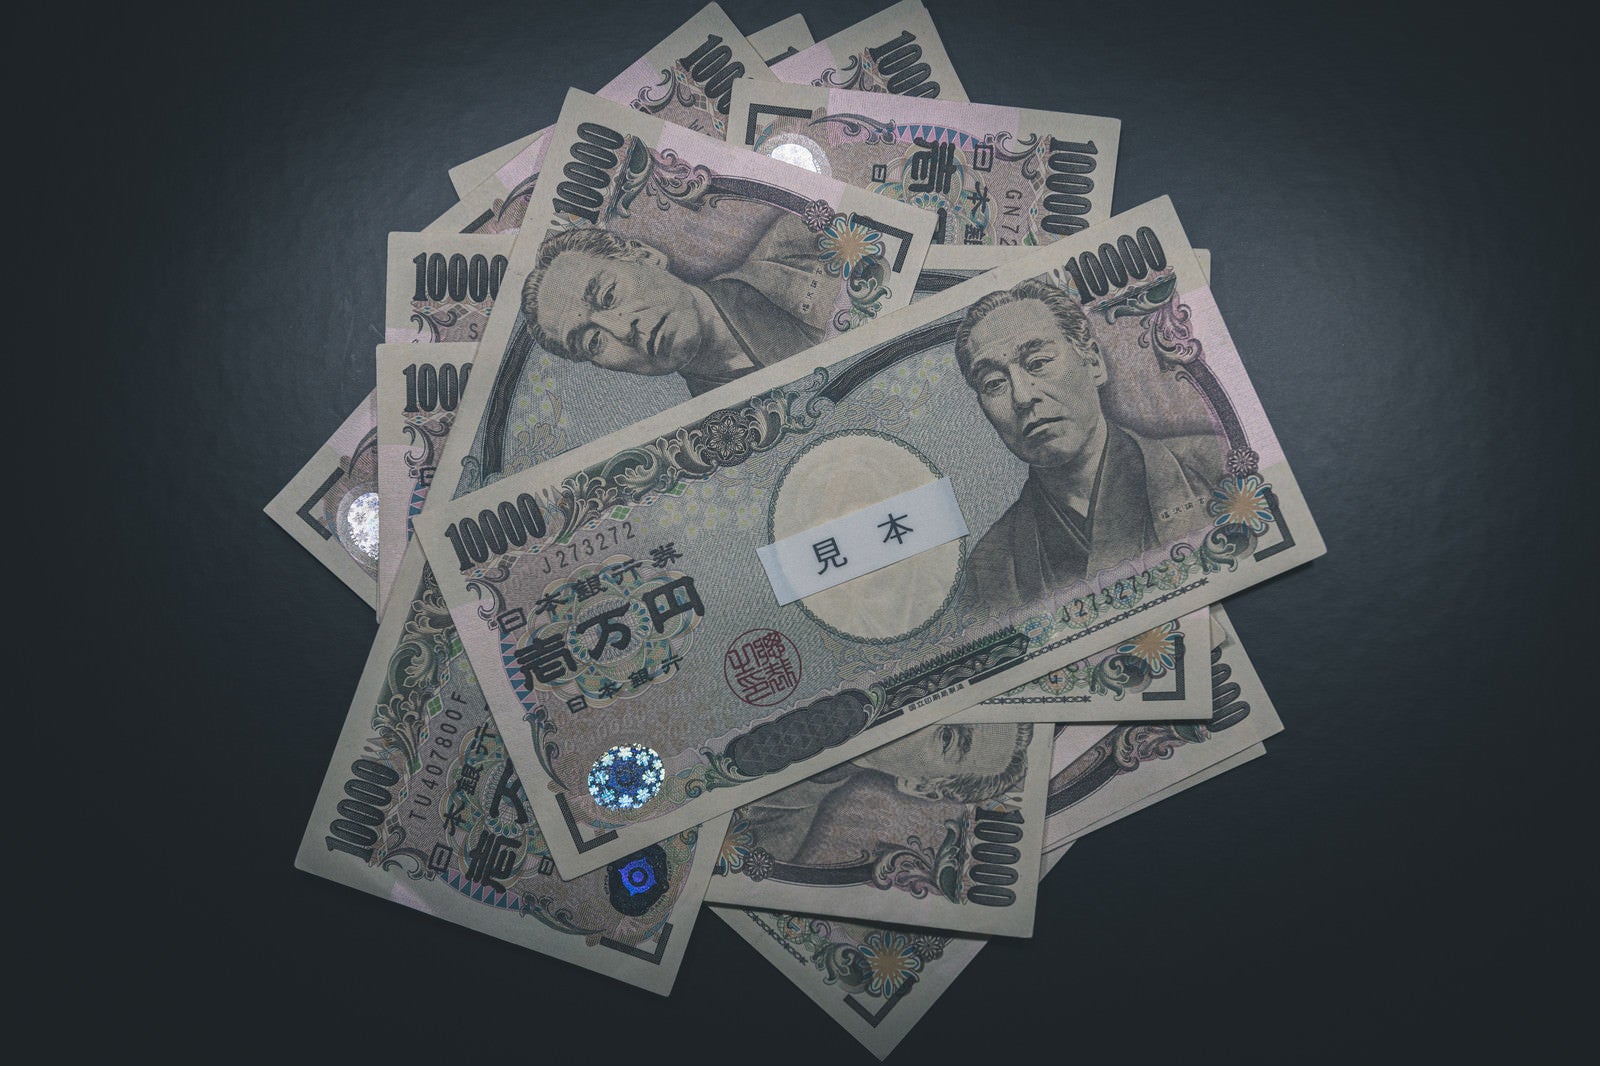 「10万円一律給付」の写真